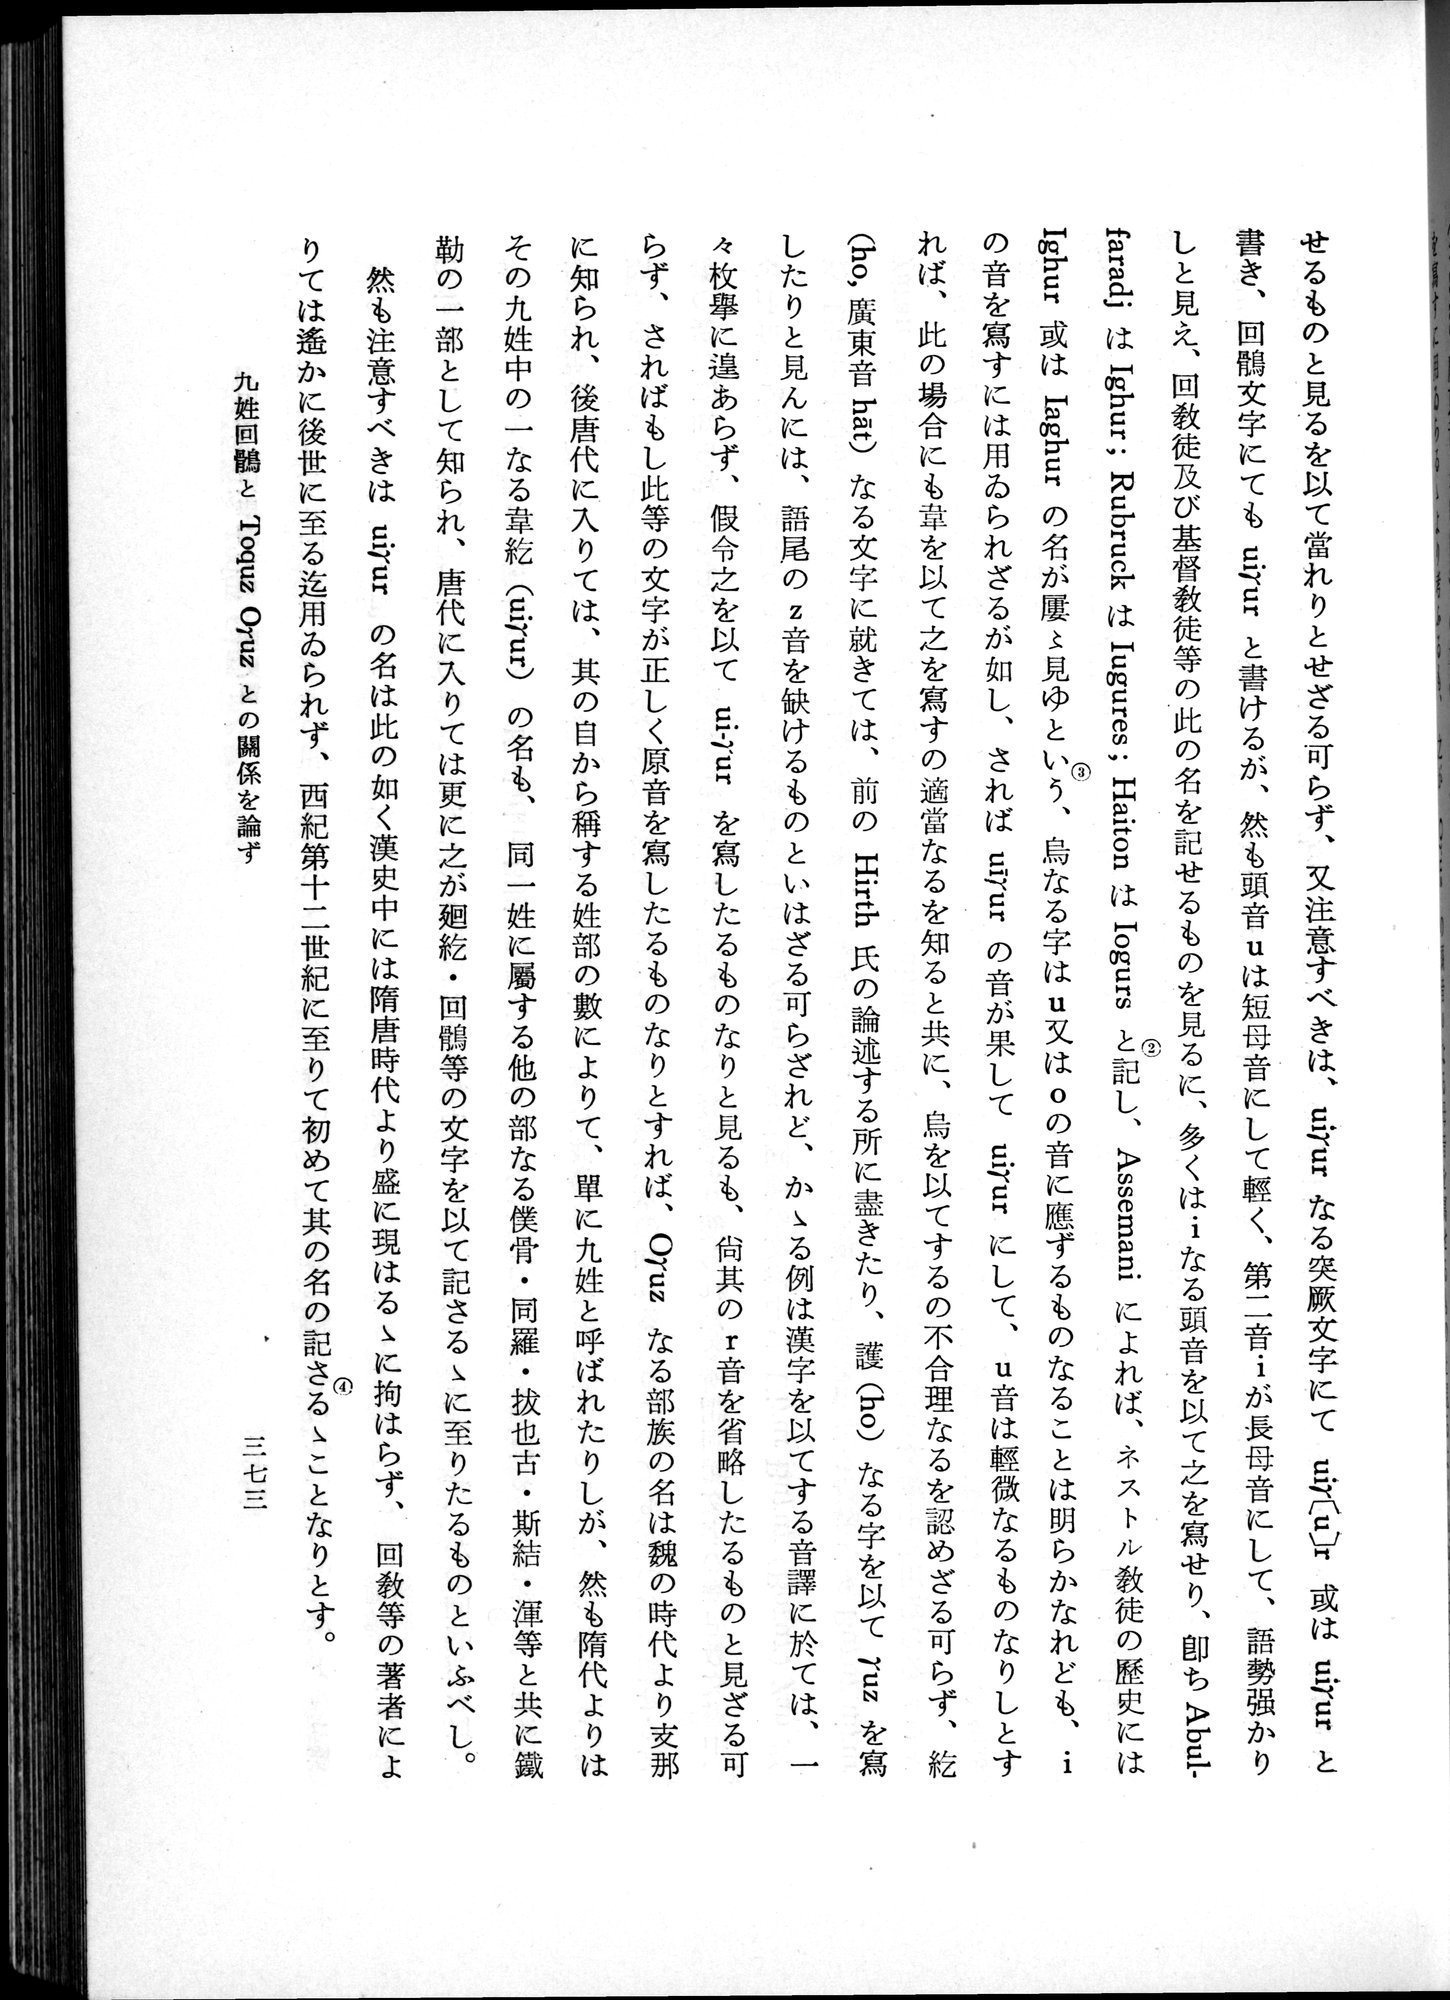 羽田博士史学論文集 : vol.1 / Page 411 (Grayscale High Resolution Image)